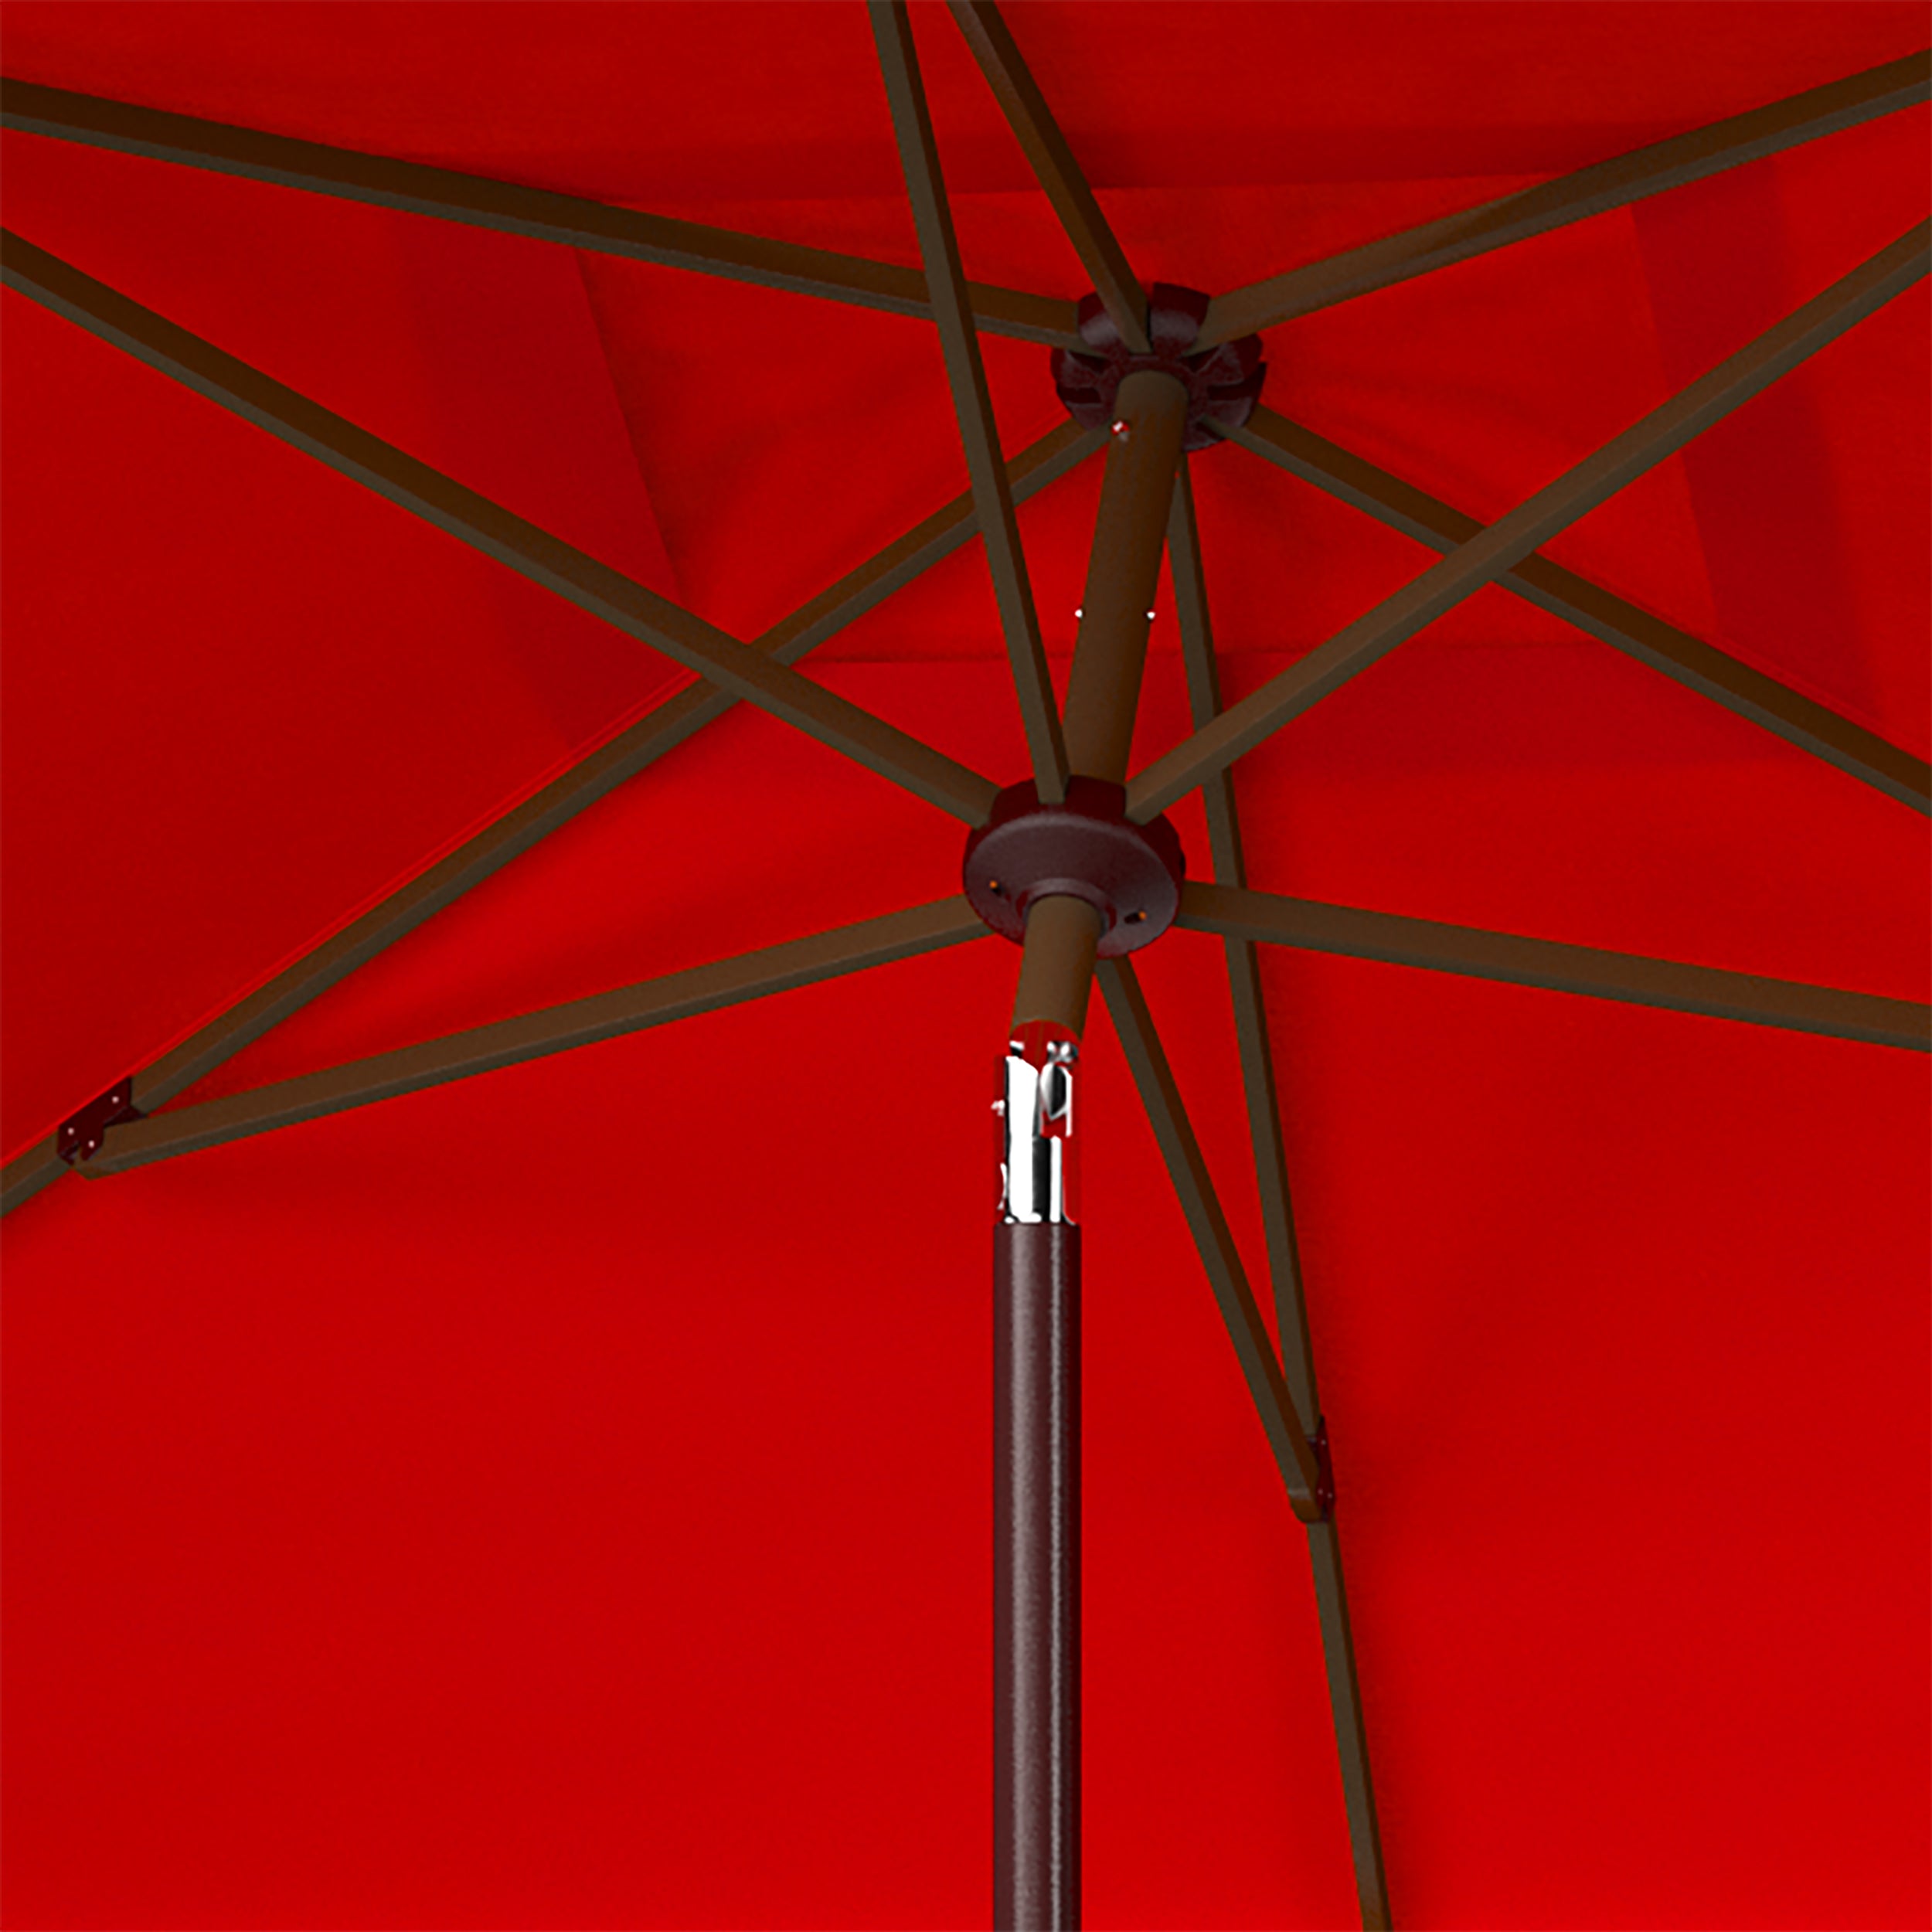 Safavieh Milan Fringe 6.5 X 10 Ft Rect Crank Umbrella , PAT8308